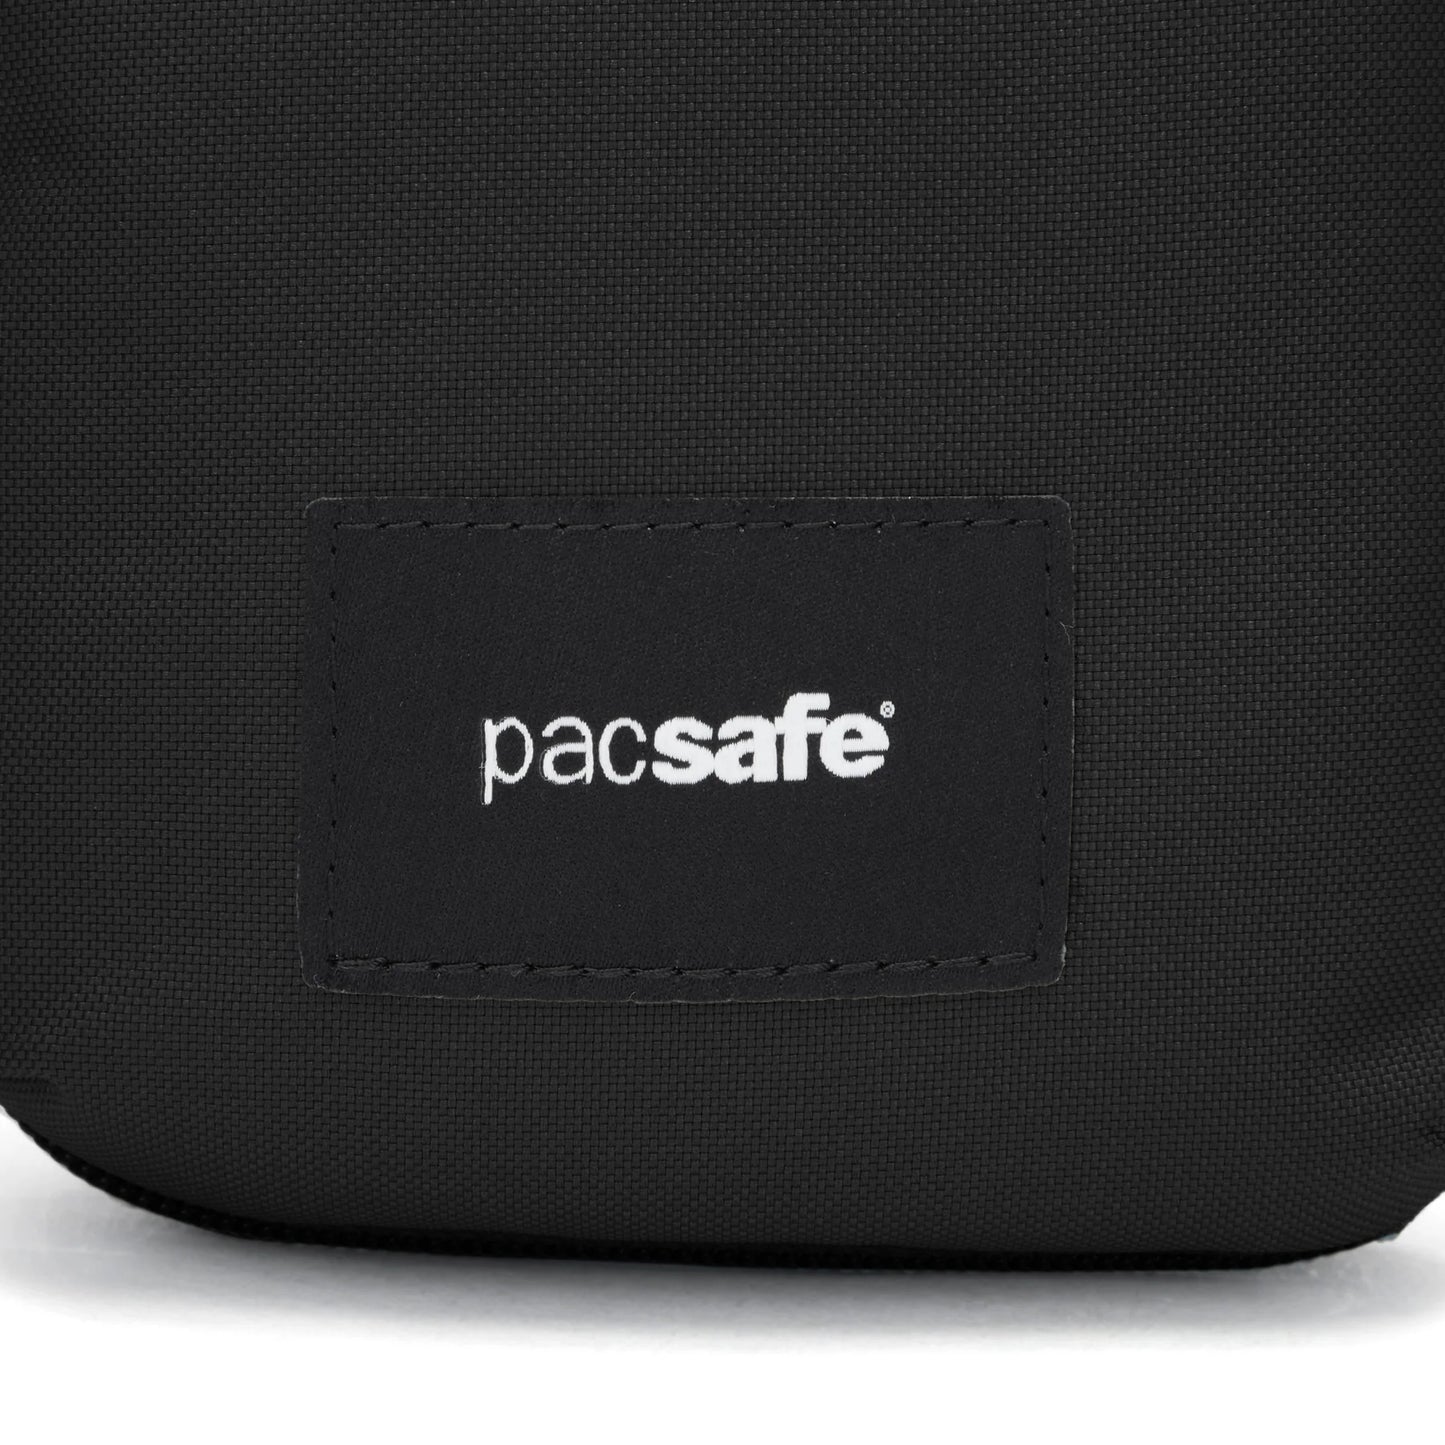 Pacsafe PacsafeGo Anti-Theft Tech Crossbody Bag